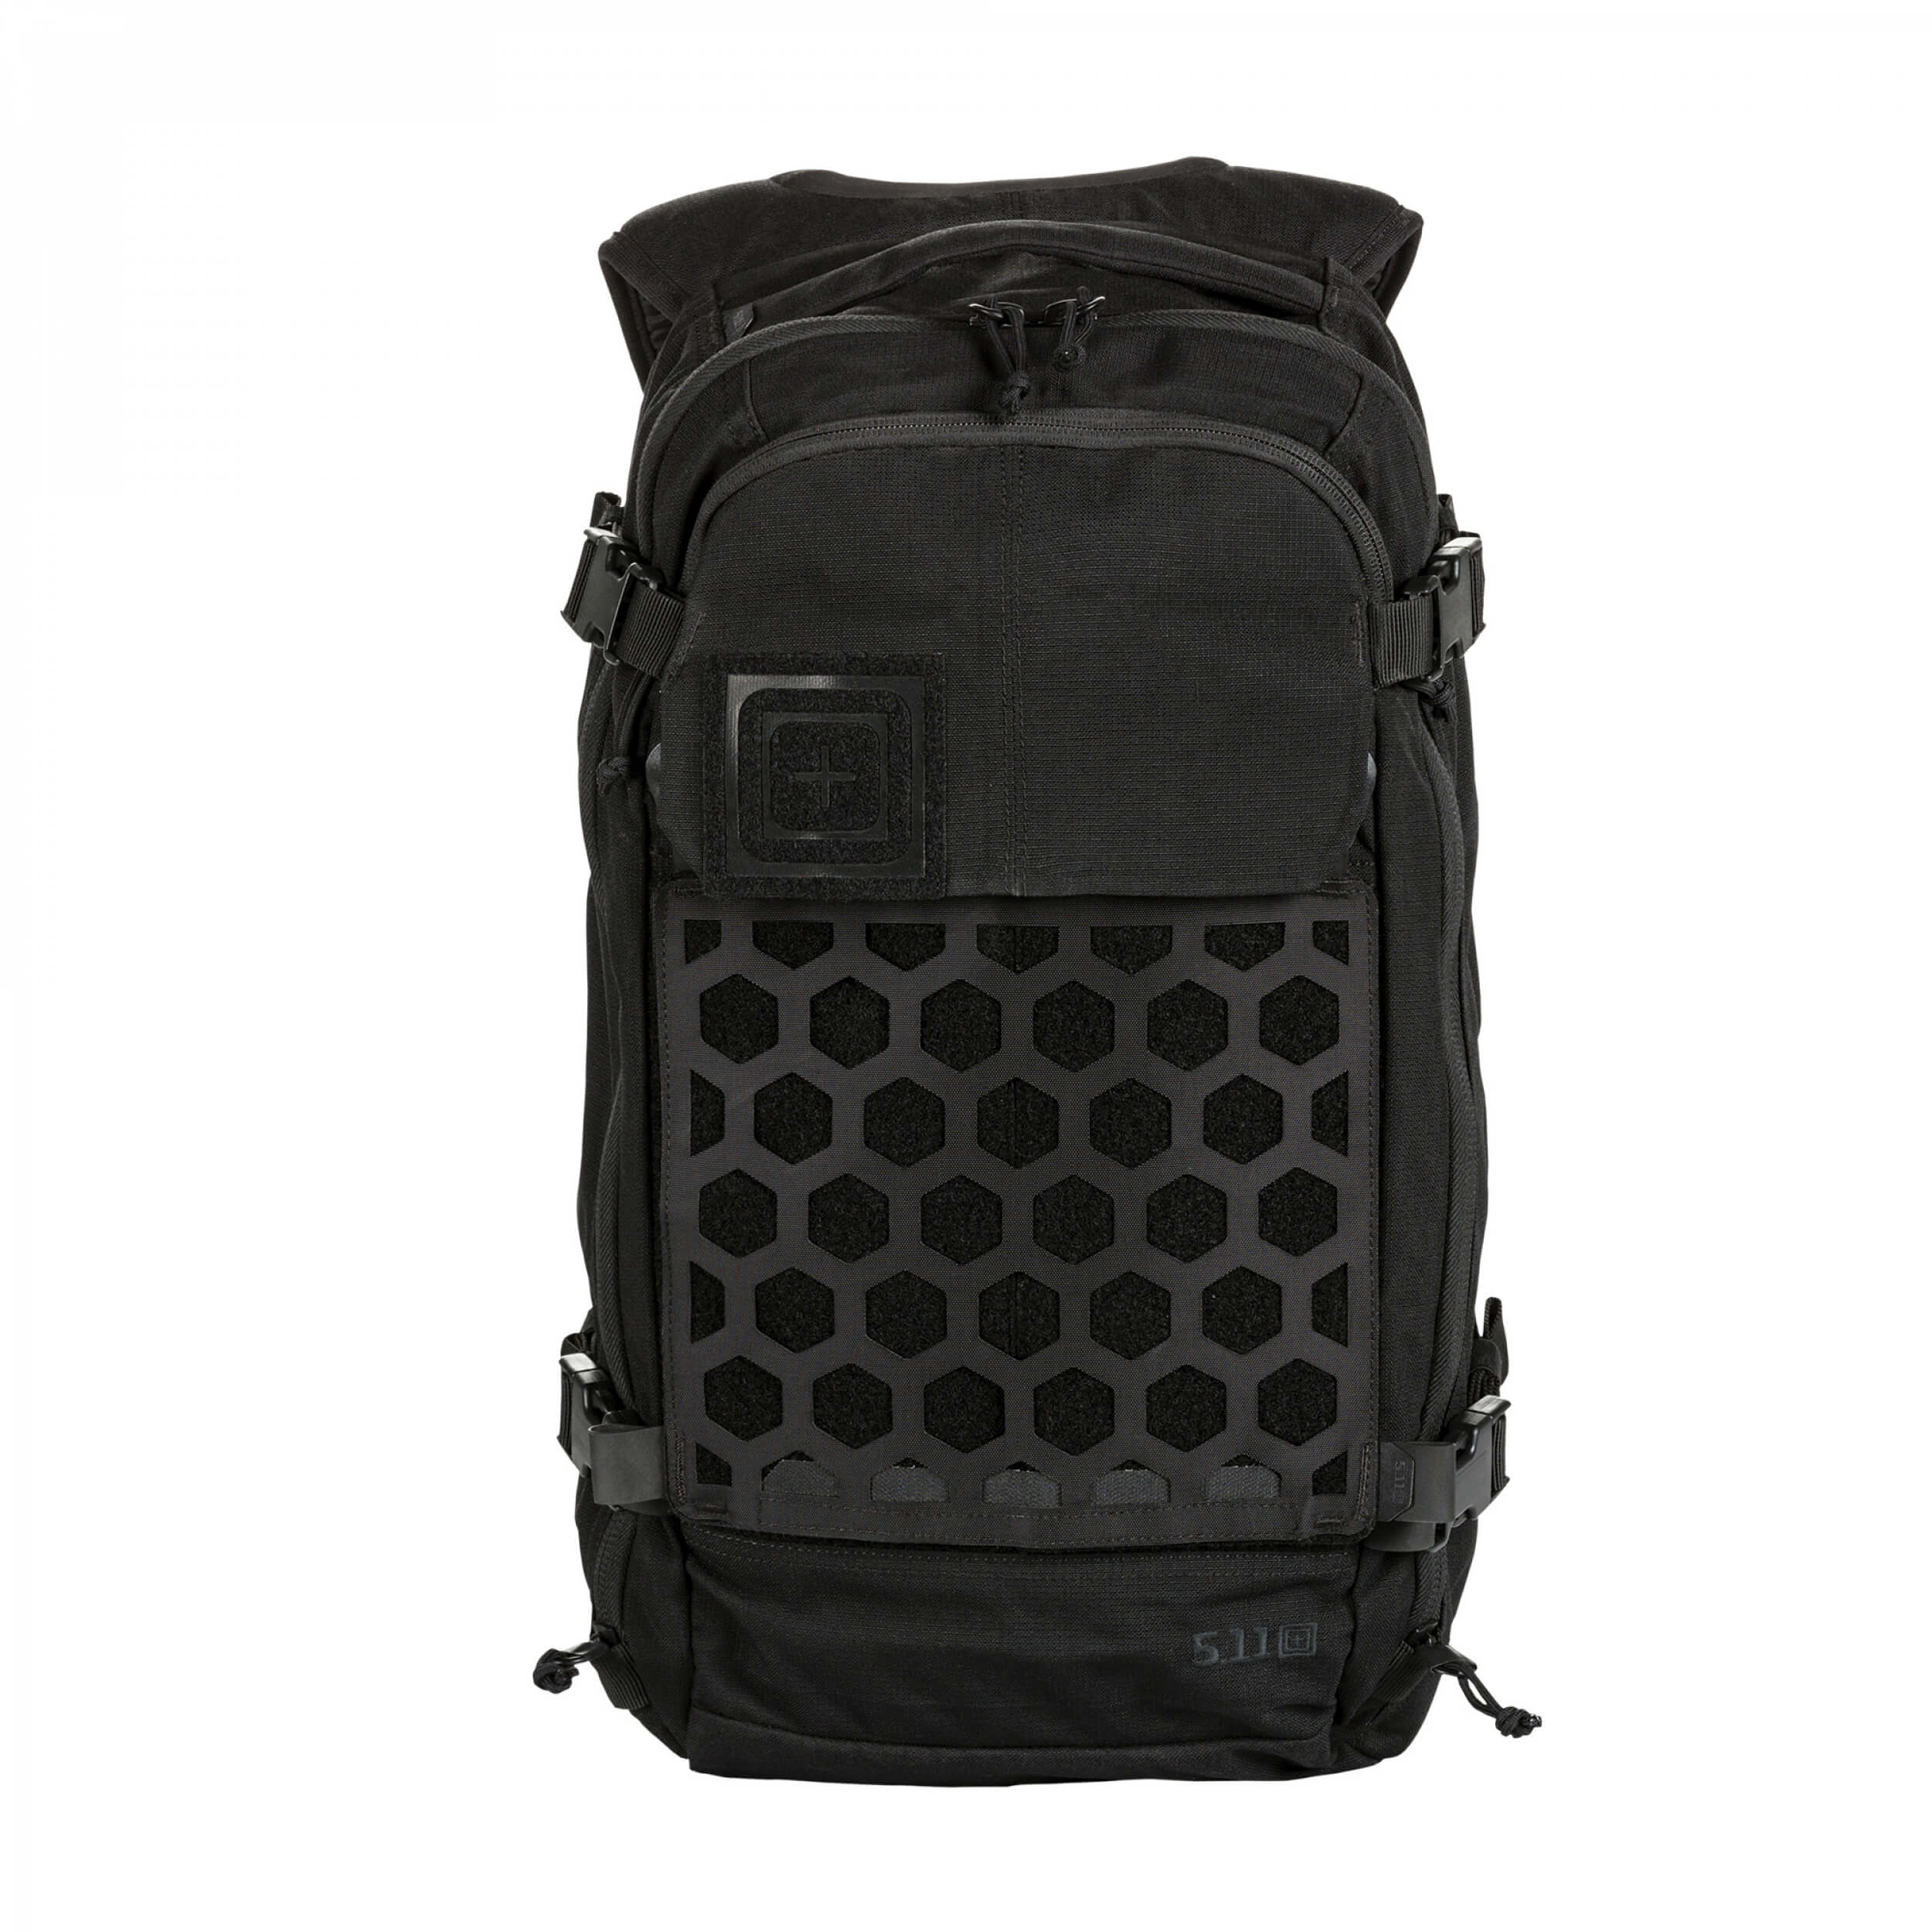 5.11 Tactical AMP12 Rucksack Backpack 25L BLACK